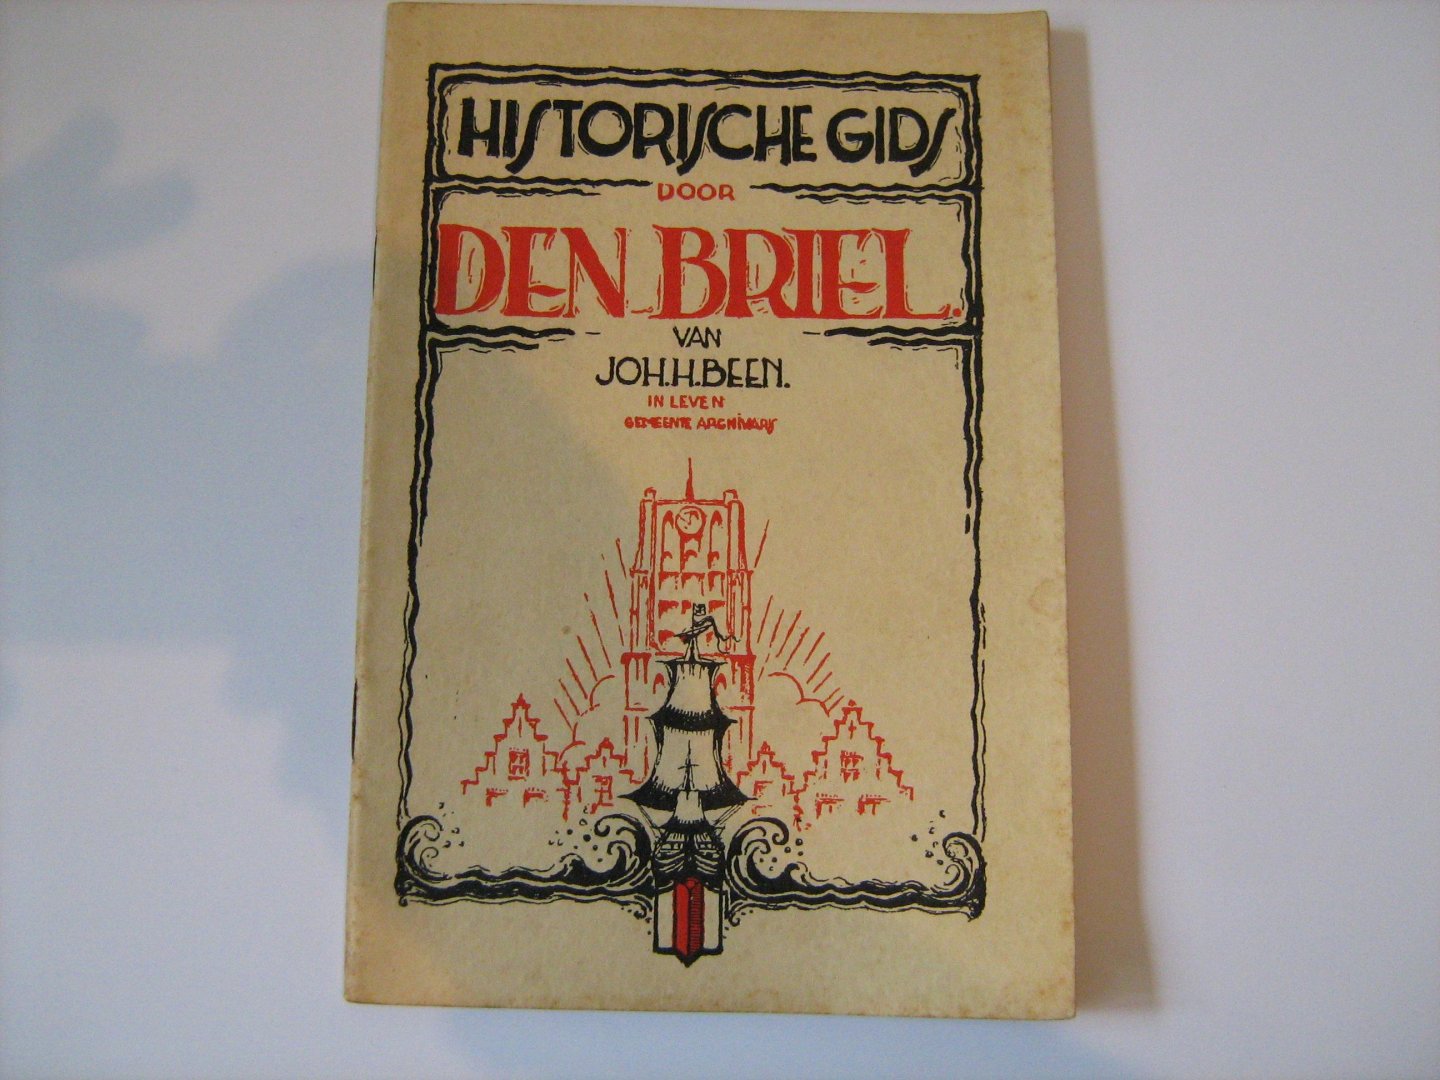 Joh. H. Been - Den Briel Historische gids 1934